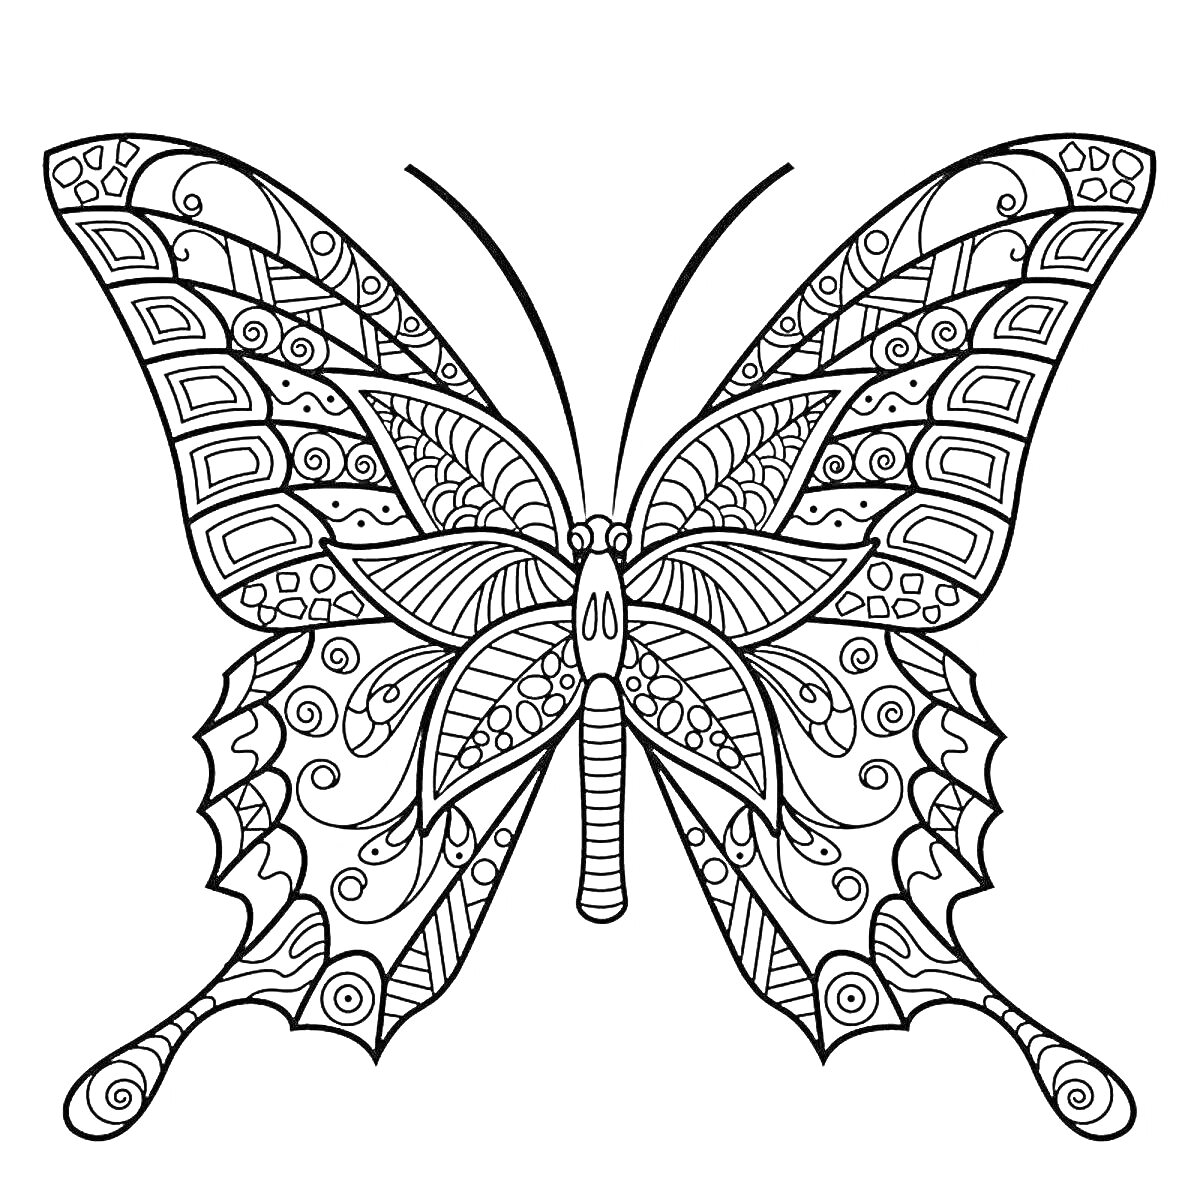 Раскраска Бабочка с изящными узорами и декоративными элементами на крыльях